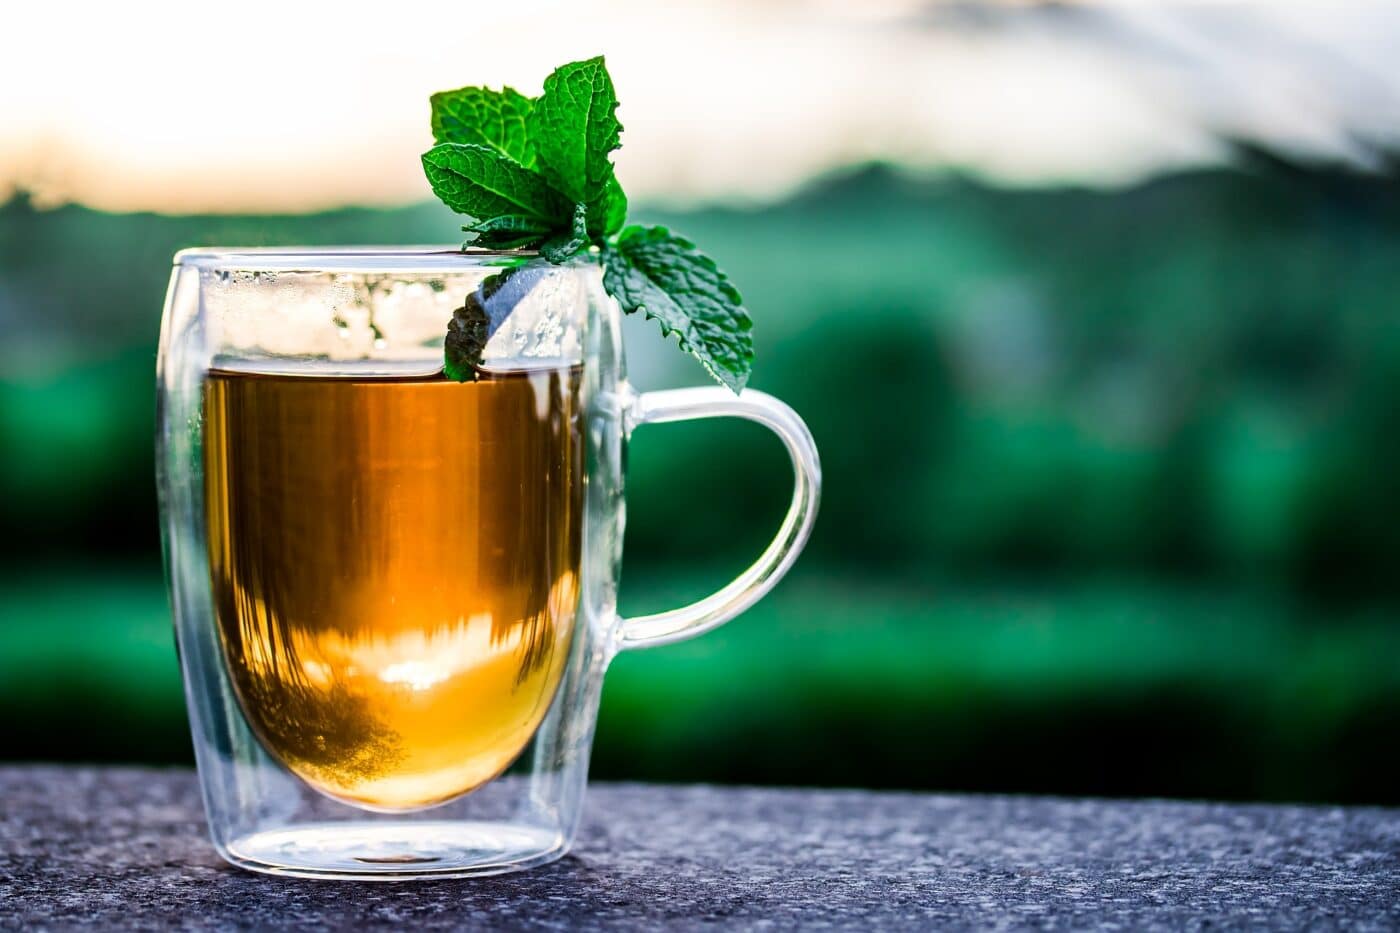 mint in tea as medicine